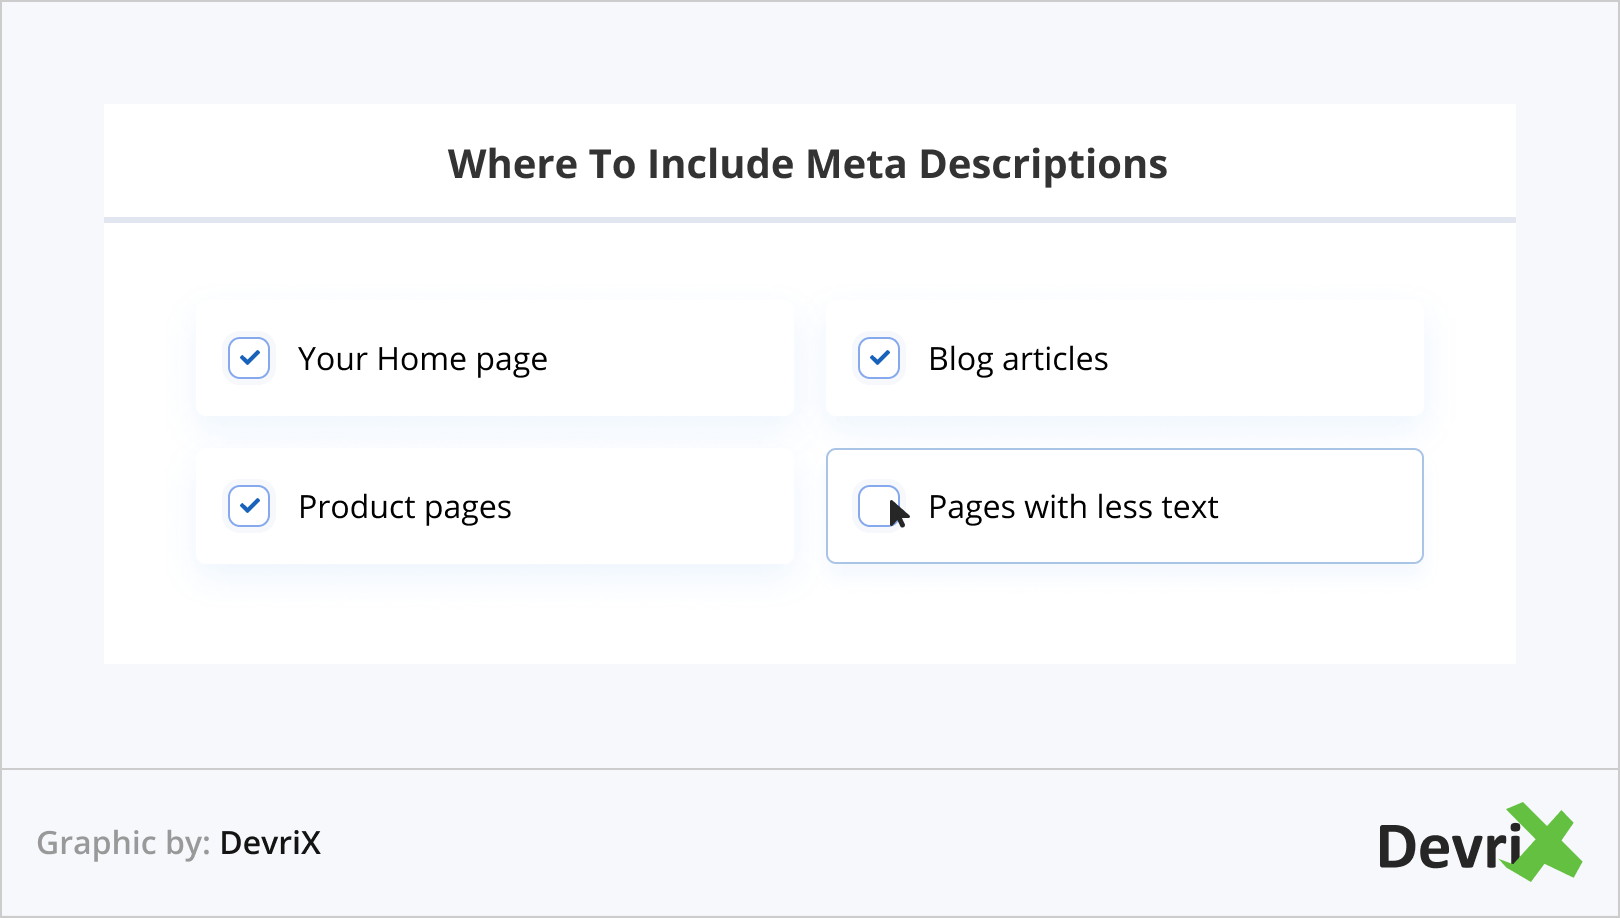 Where To Include Meta Descriptions